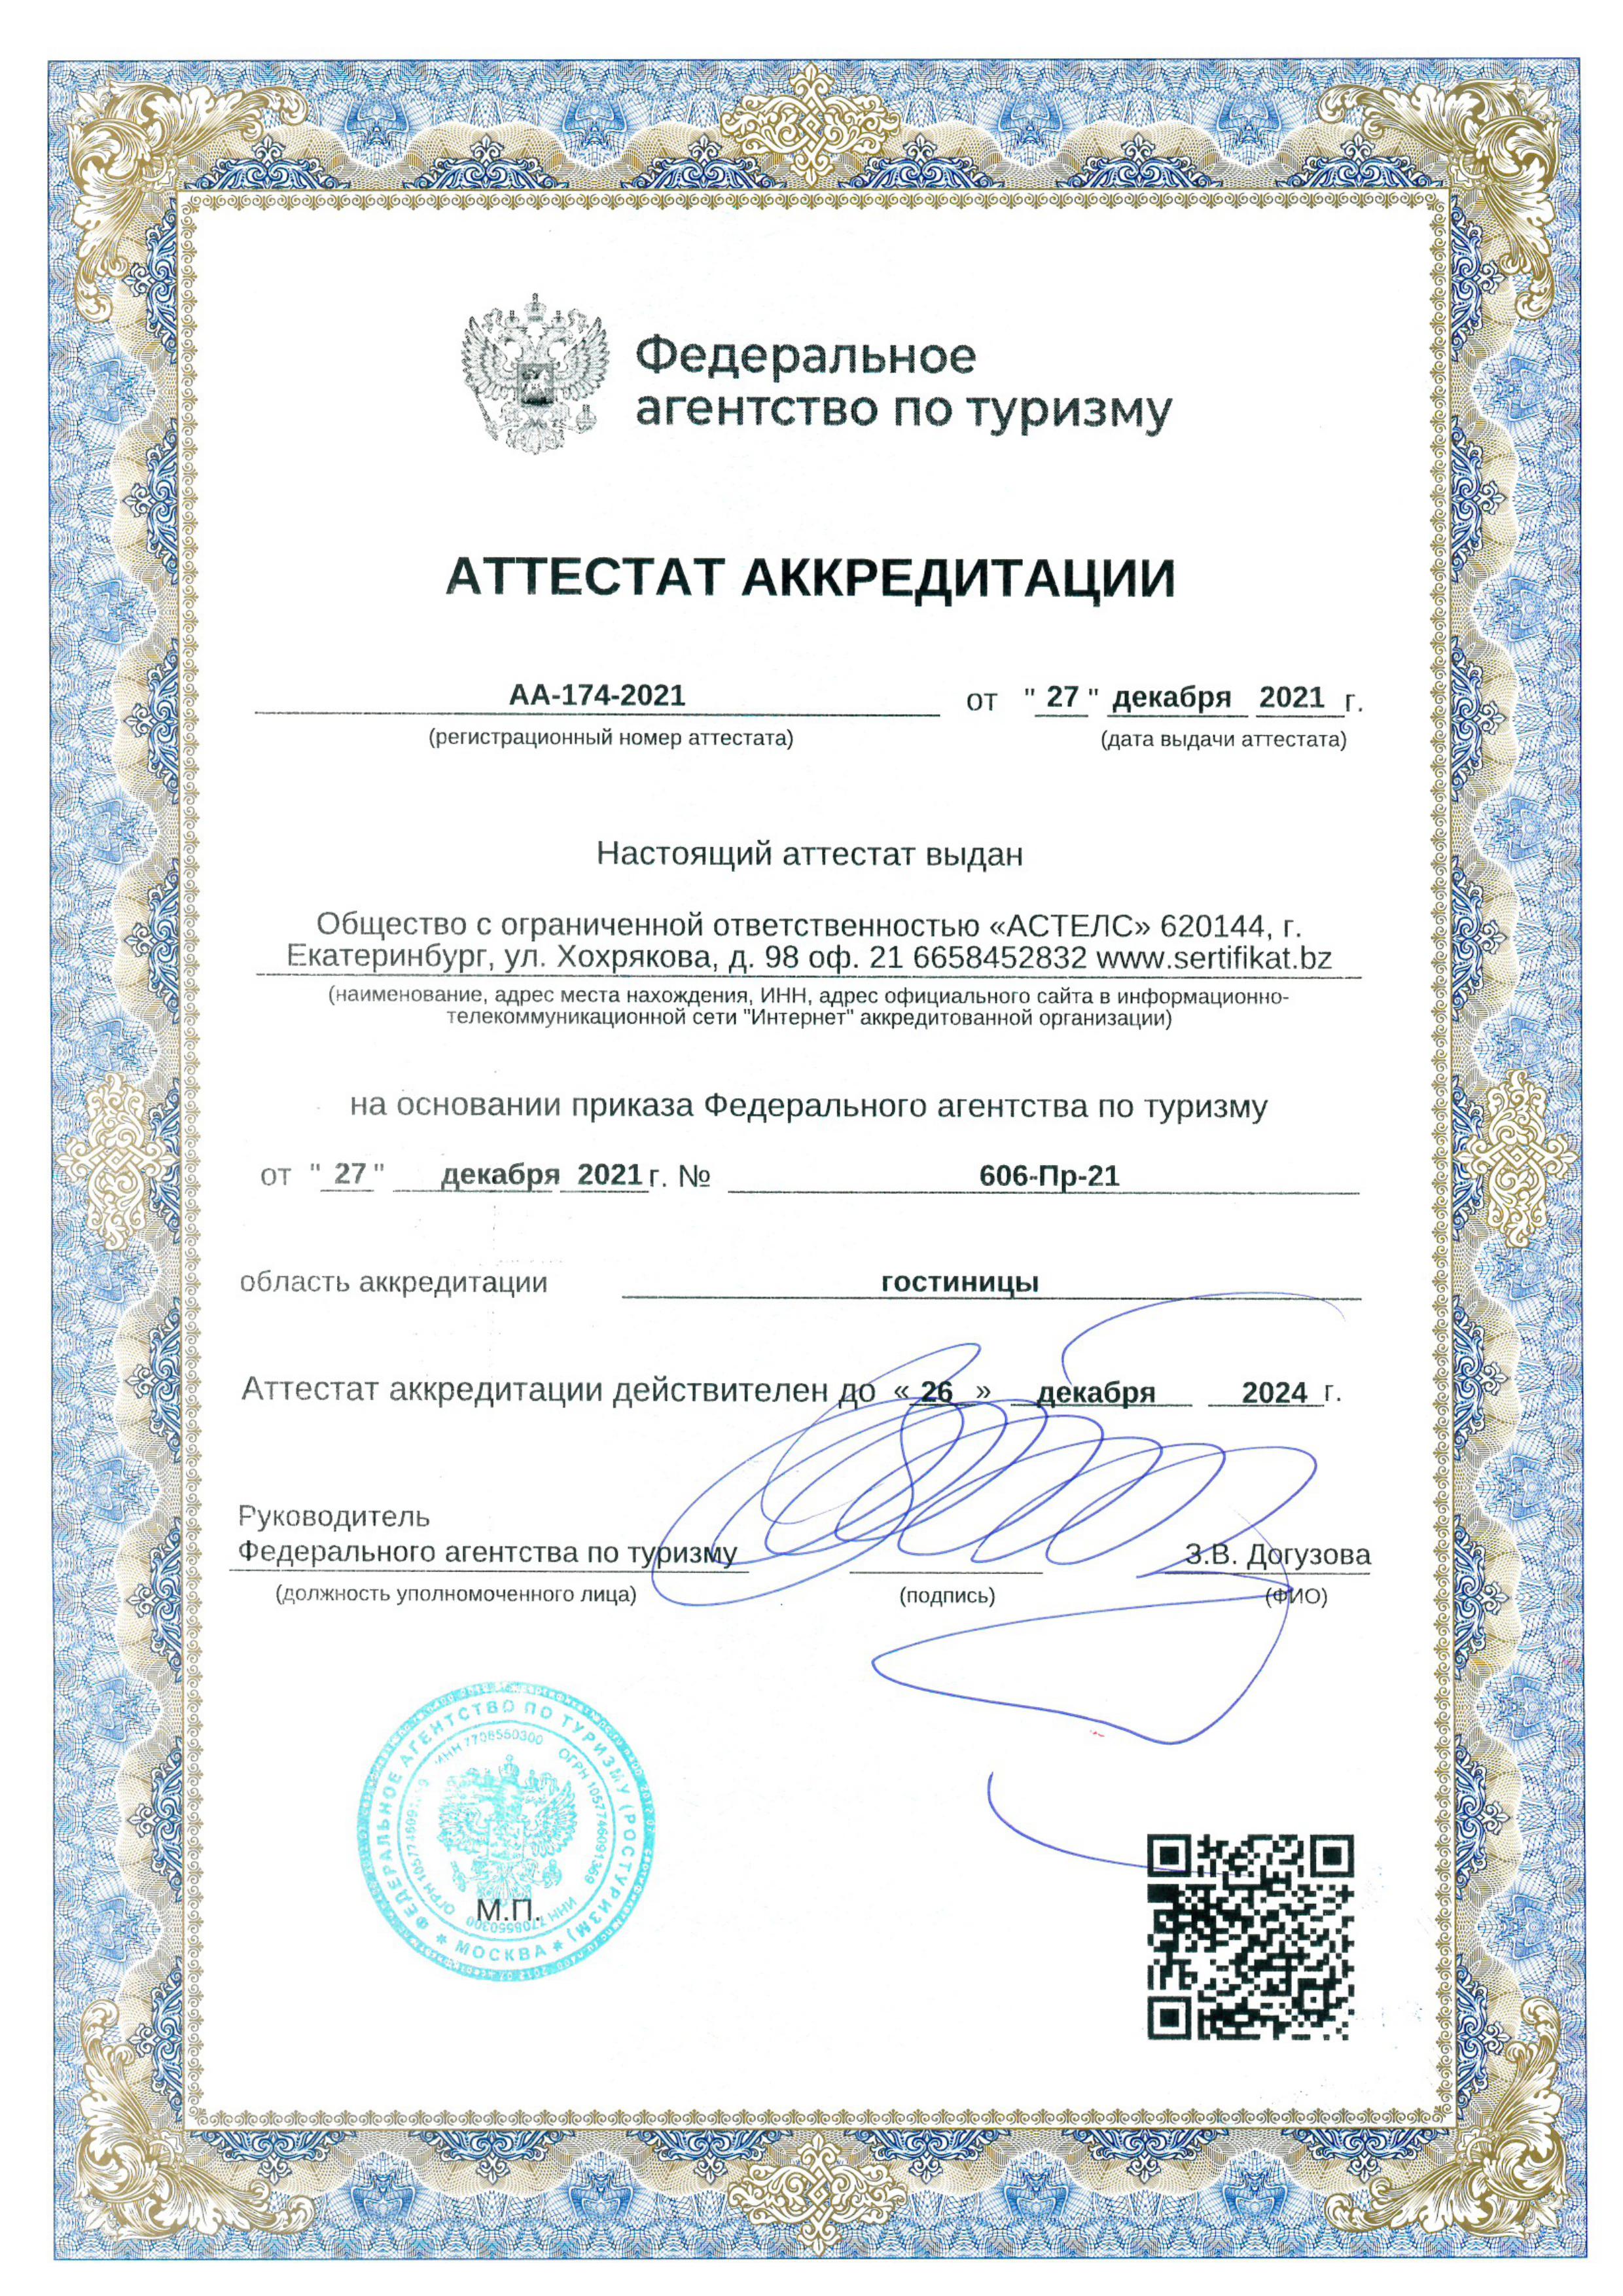 Классификация гостиниц и других средств размещения в Нижнем Новгороде -получить в Астелс